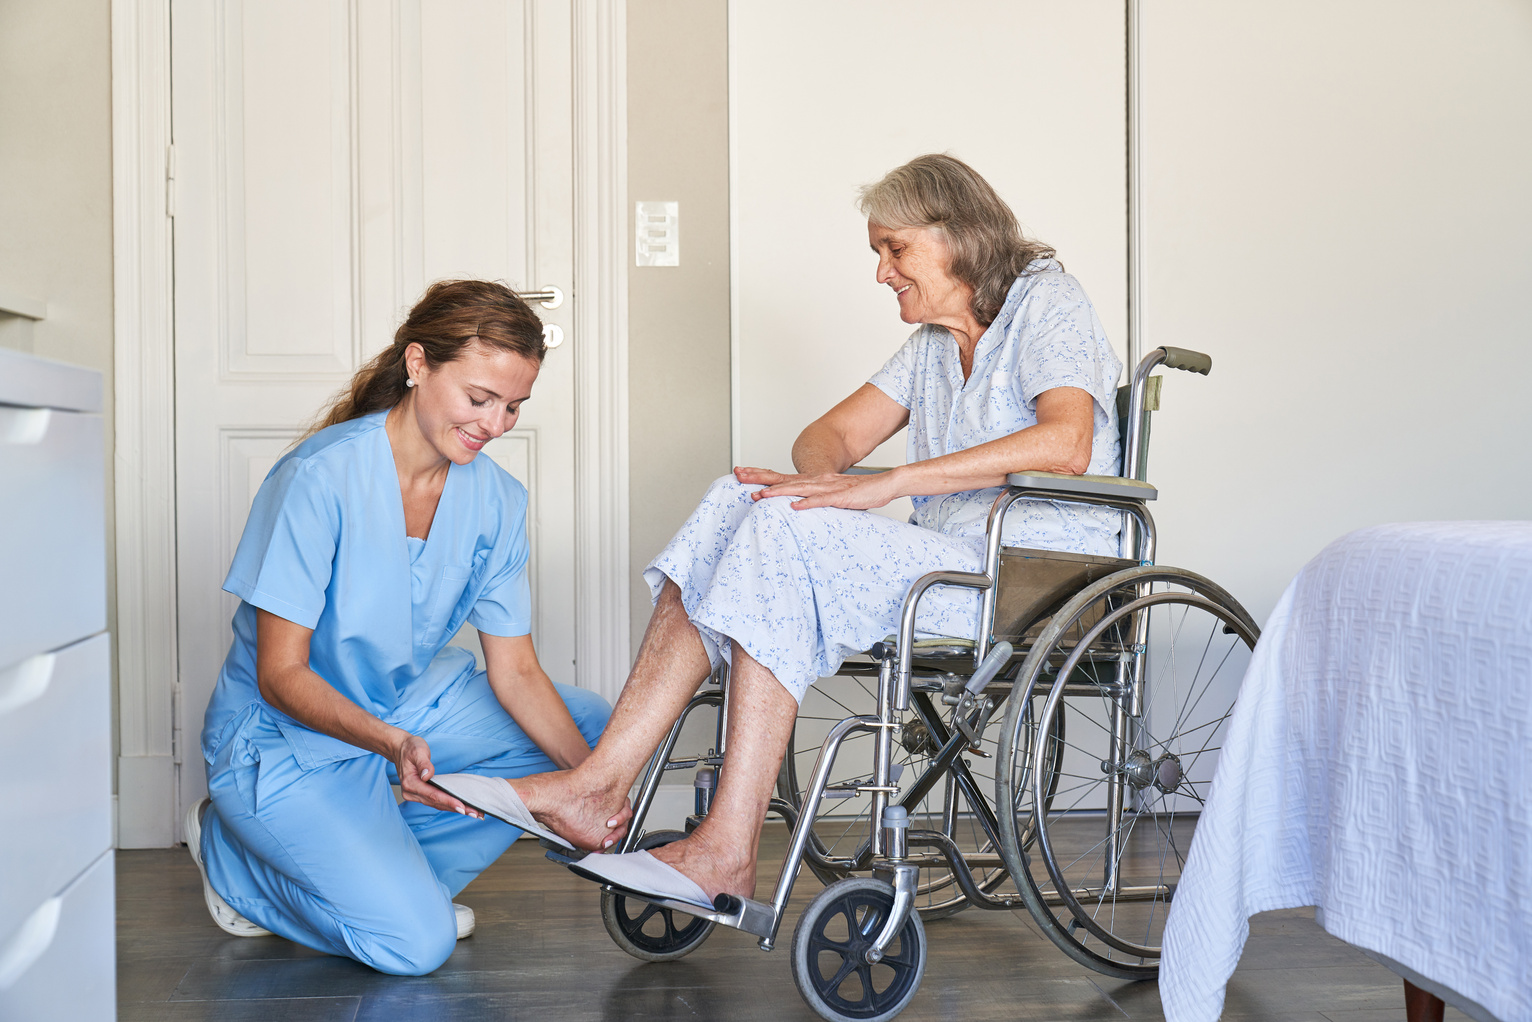 Elderly Care Worker Helps Senior Citizen in a Wheelchair to Put